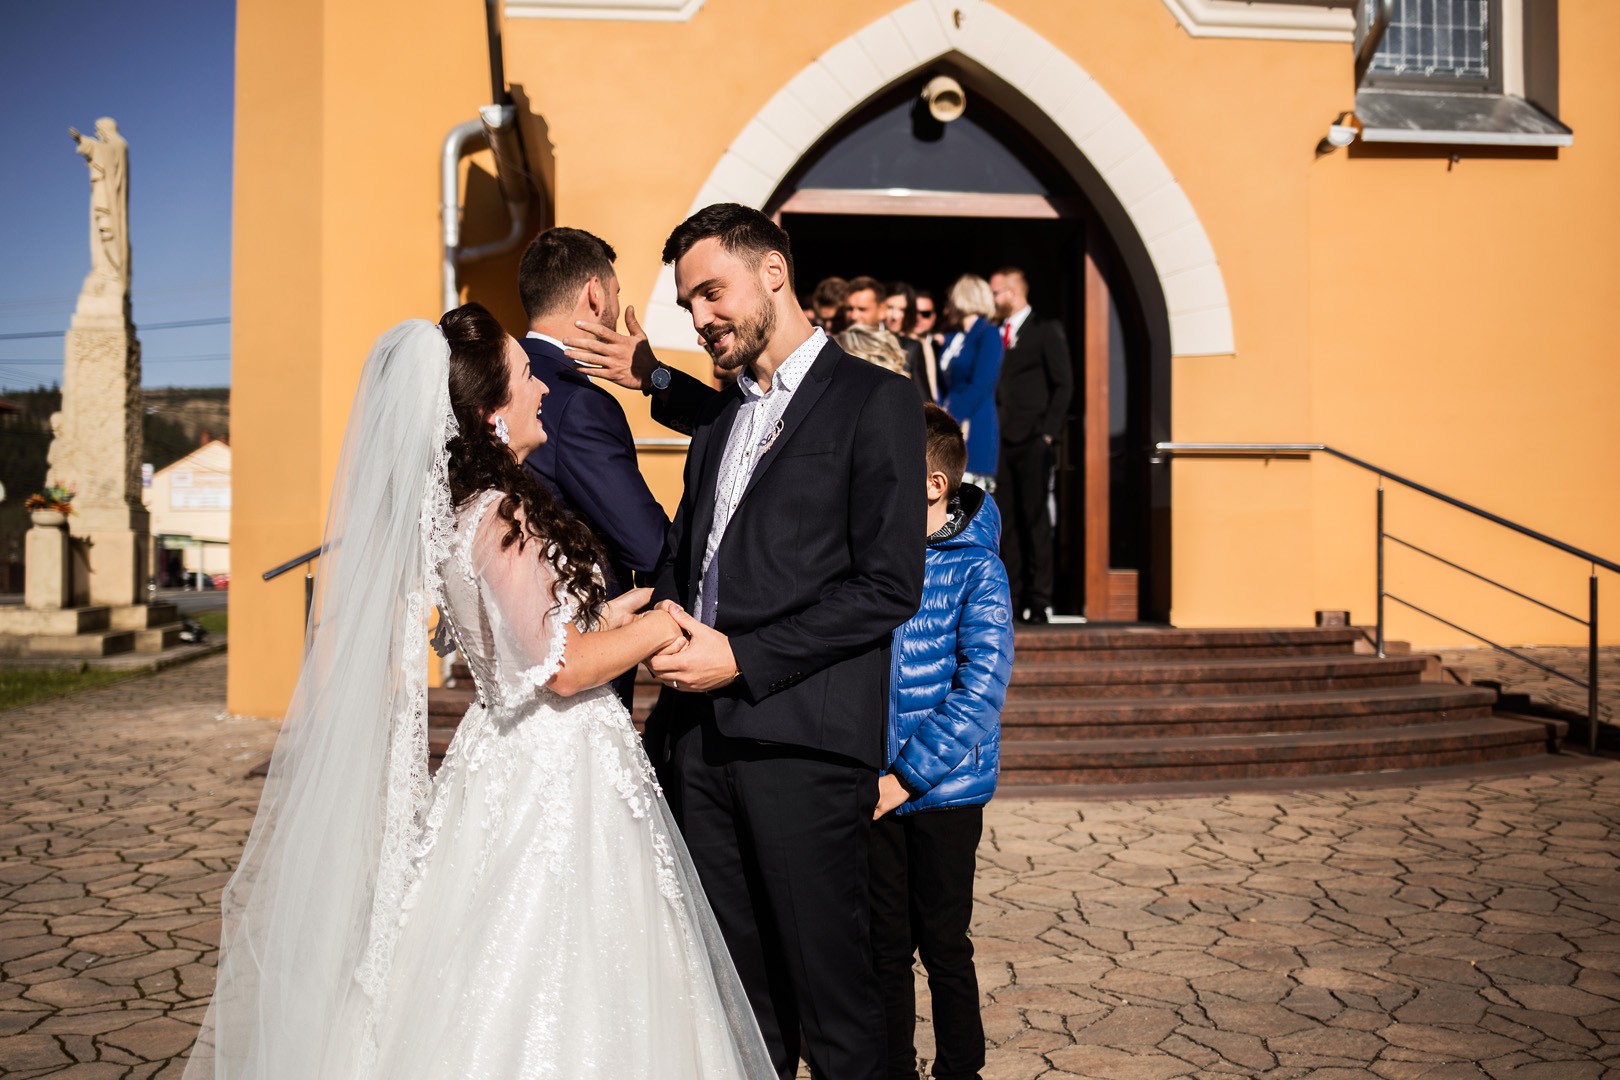 Wedding photos Zdenka and Marko - 0174.jpg